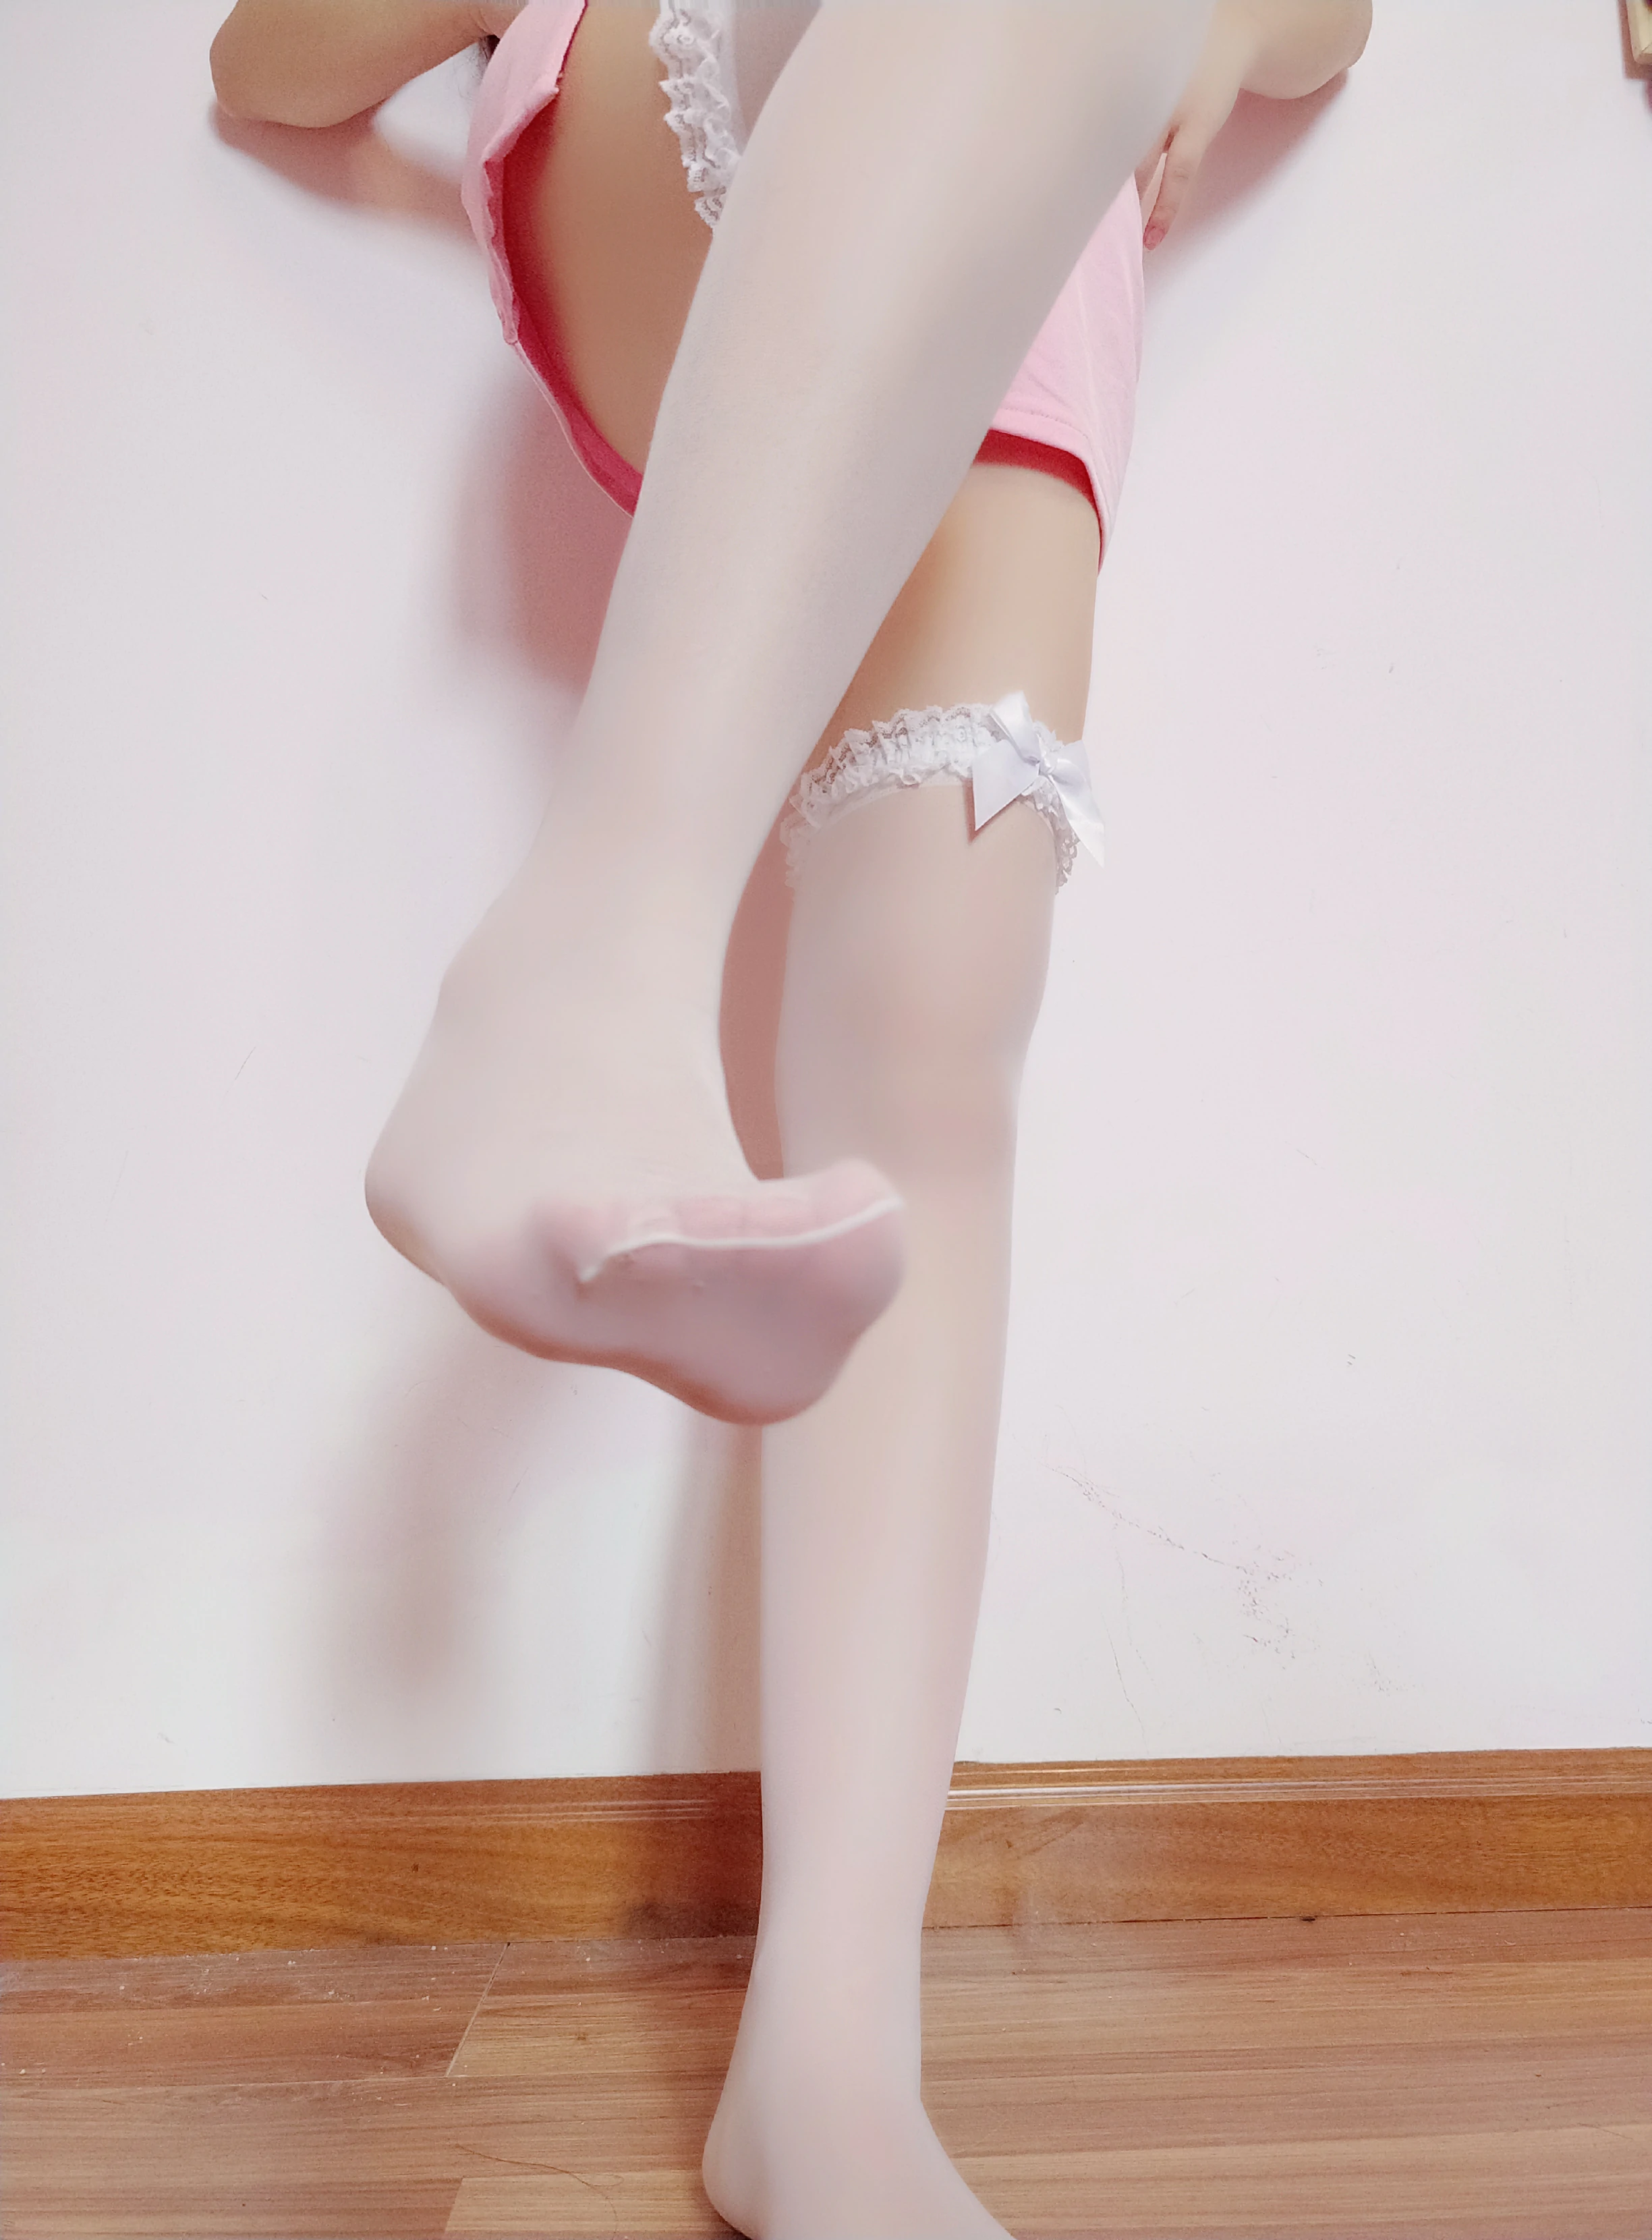 网红清纯少女 古川kagura 粉色性感女护士制服加白色丝袜美腿私房写真集,